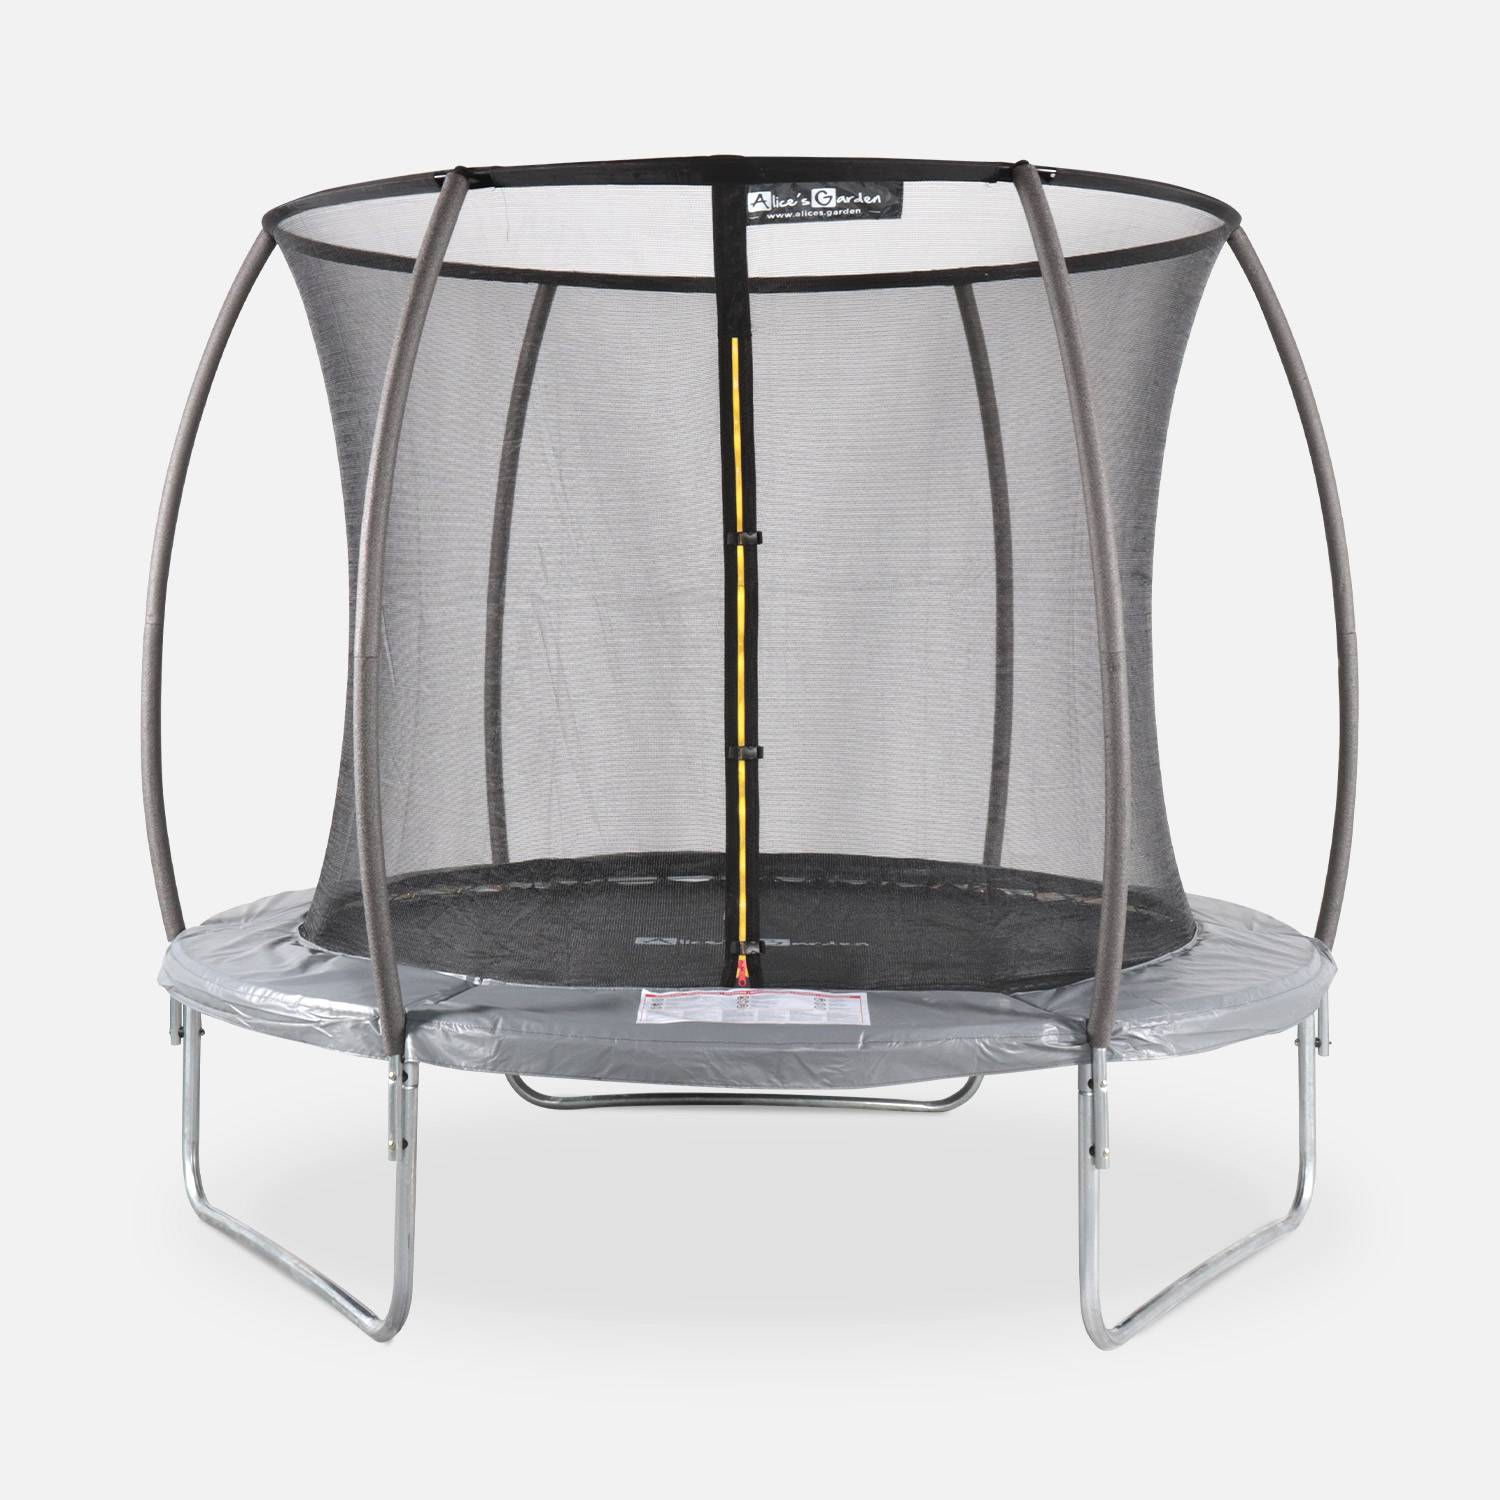 Trampoline rond Ø 250cm grijs met veiligheidsnet aan binnenzijde - Pluton INNER – Nieuw model - trampoline voor tuin 2,50m 250 cm |Kwaliteit PRO. | EU Normen. Photo1